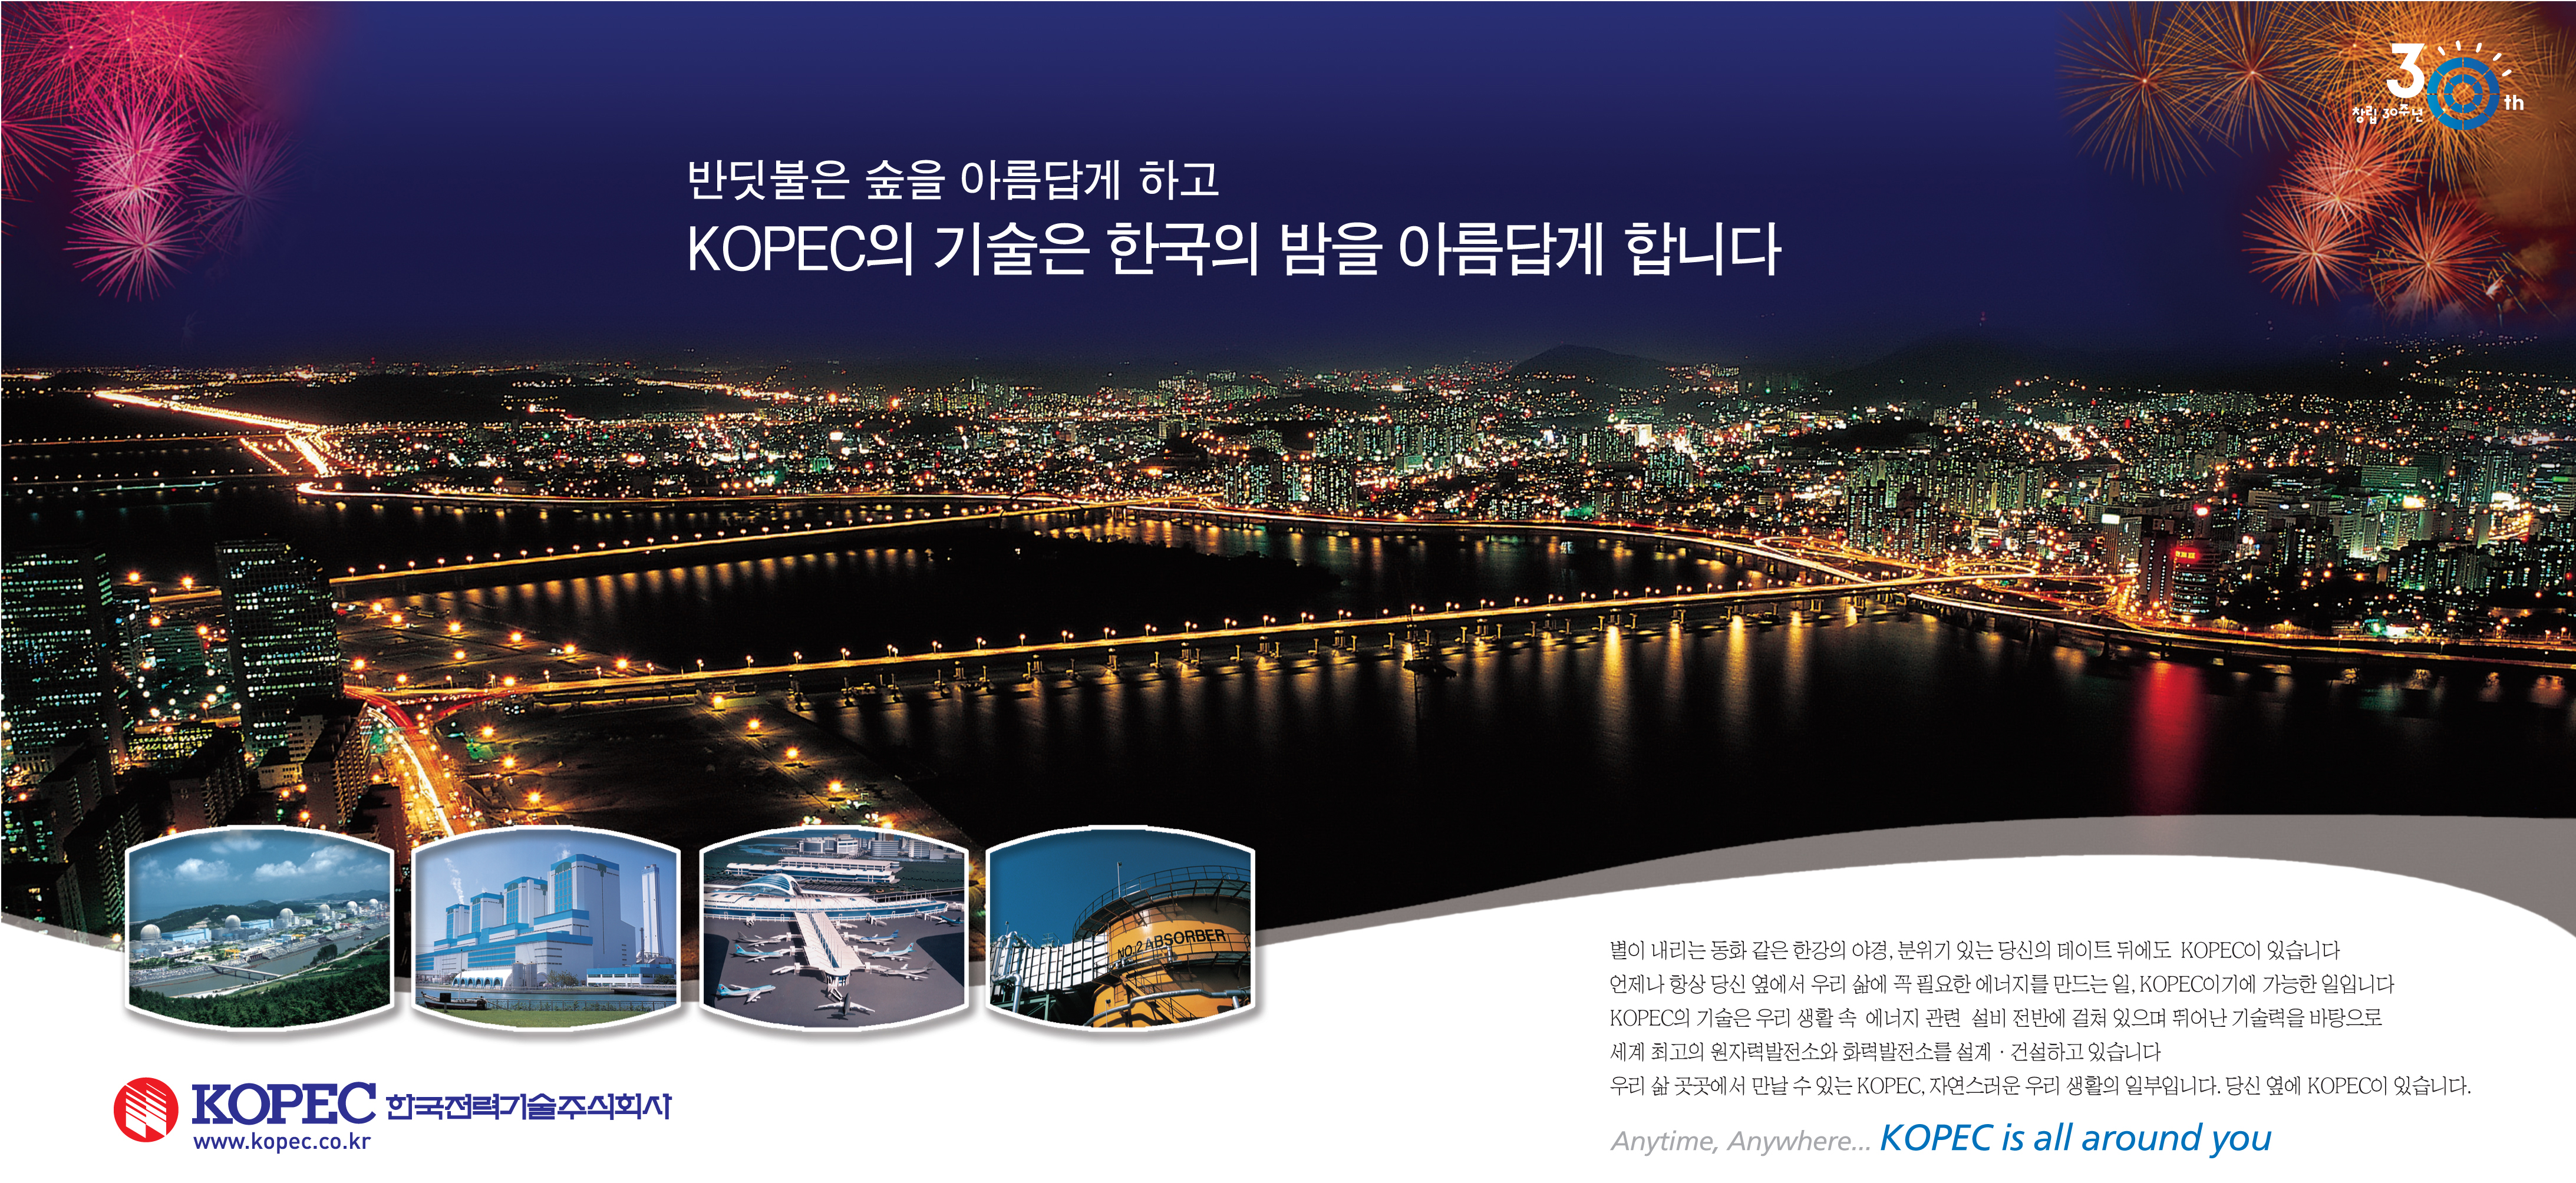 반딧불은 숲을 아름답게 하고 KOPEC의 기술은 한국의 밤을 아름답게 합니다.